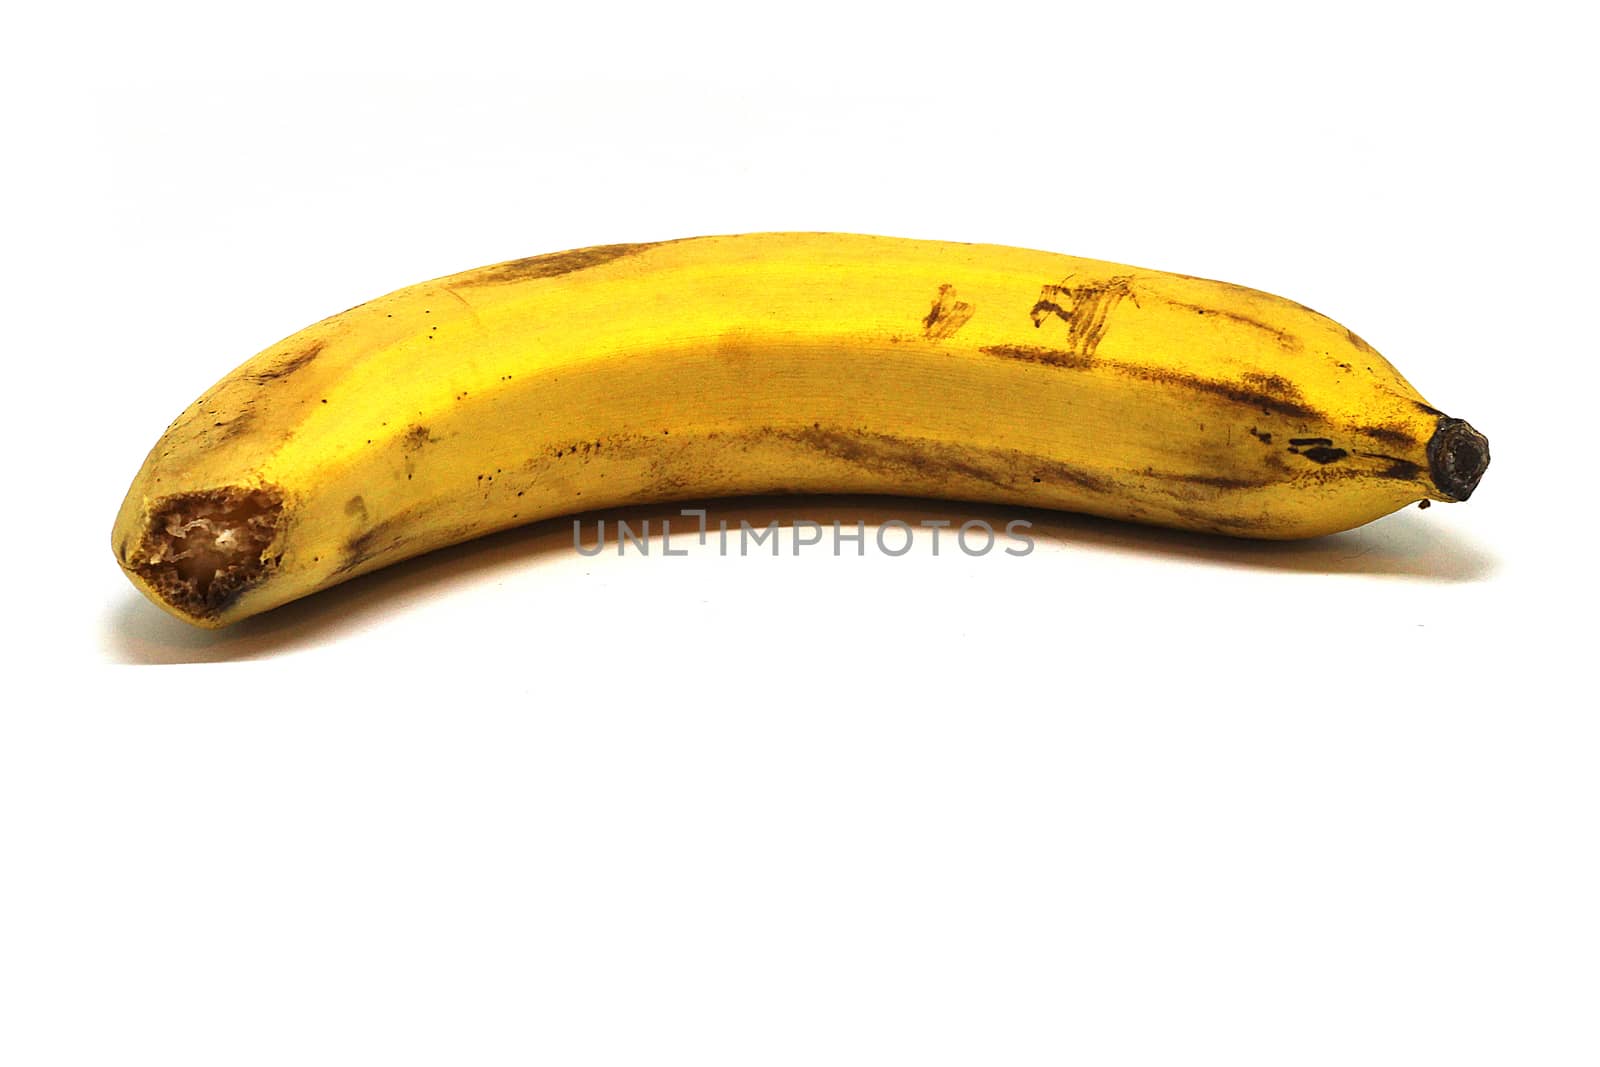 single banana isolated on white background.